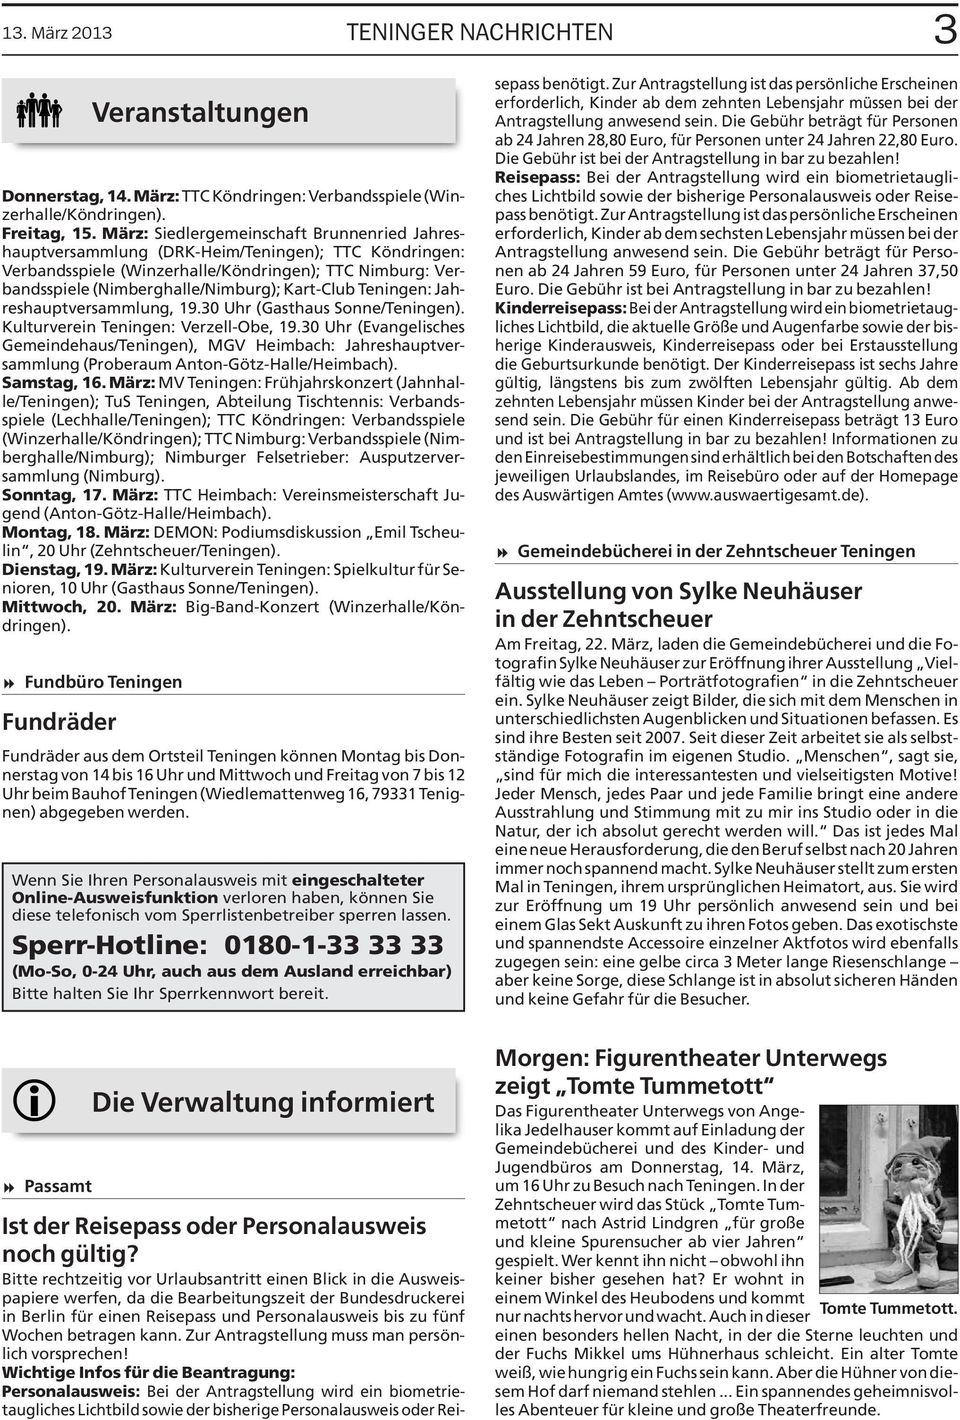 Kart-Club Teningen: Jahreshauptversammlung, 19.30 Uhr (Gasthaus Sonne/Teningen). Kulturverein Teningen: Verzell-Obe, 19.